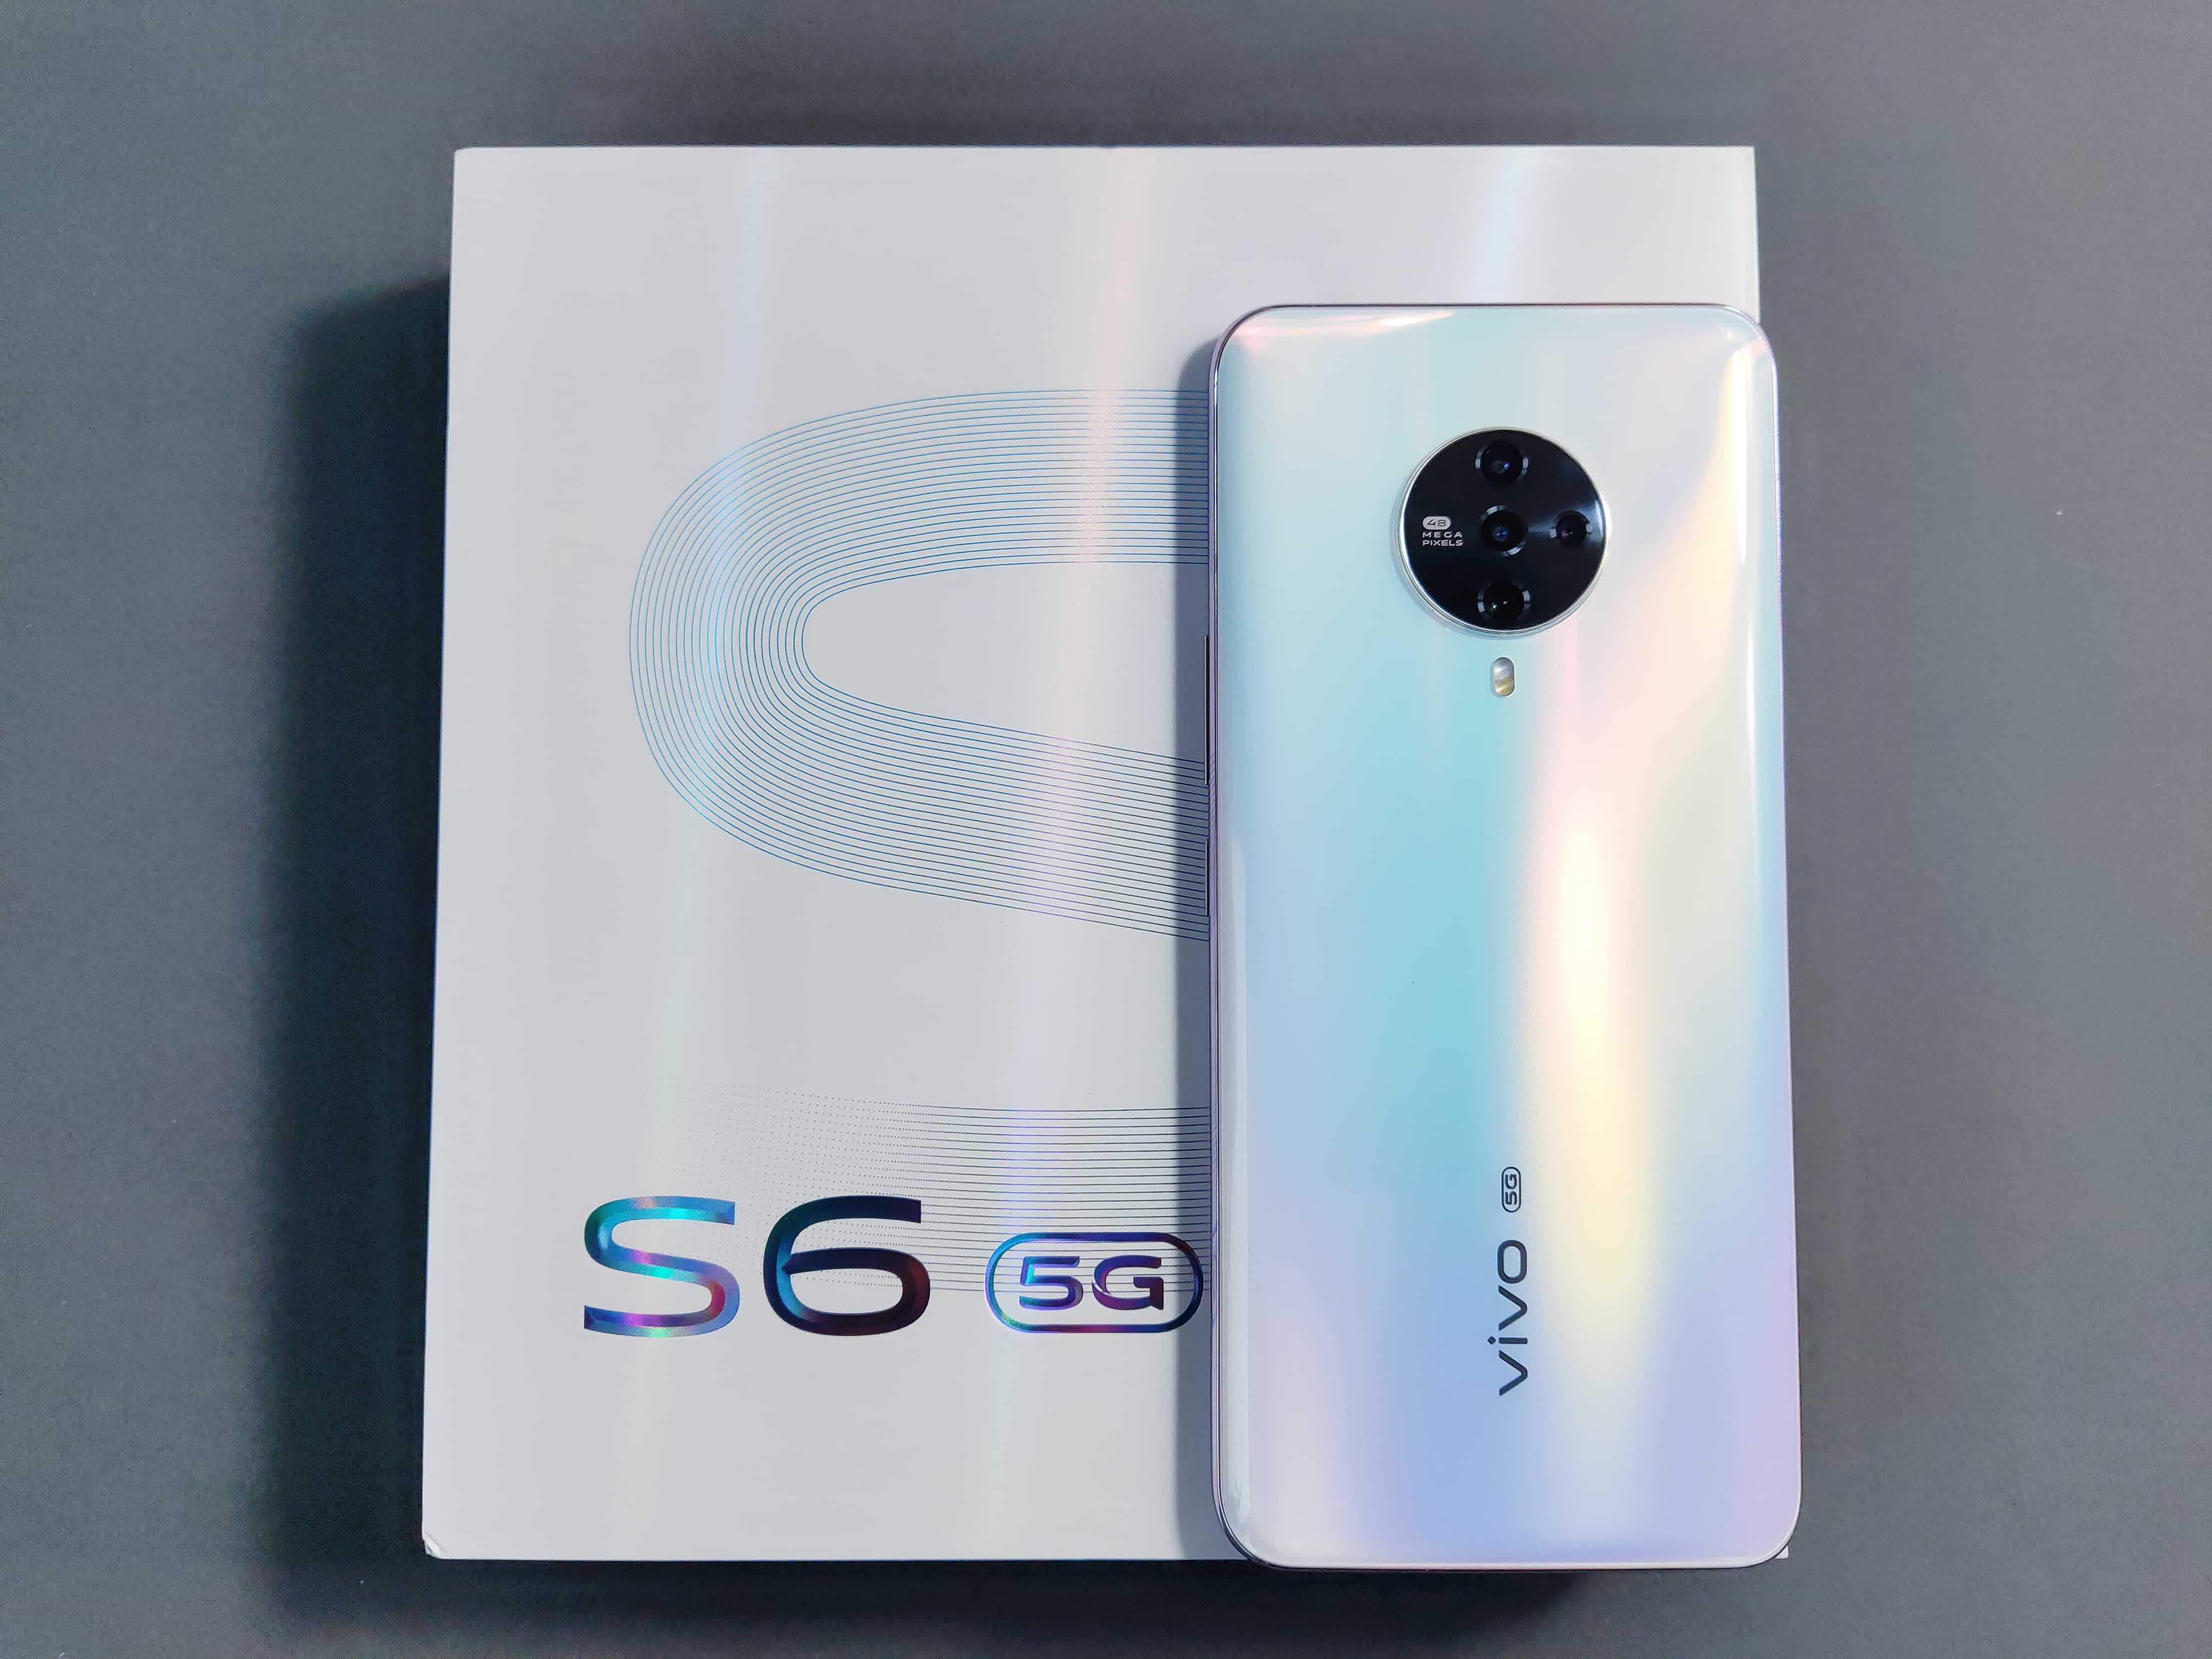 vivo S6评测：5G时代的自拍利器